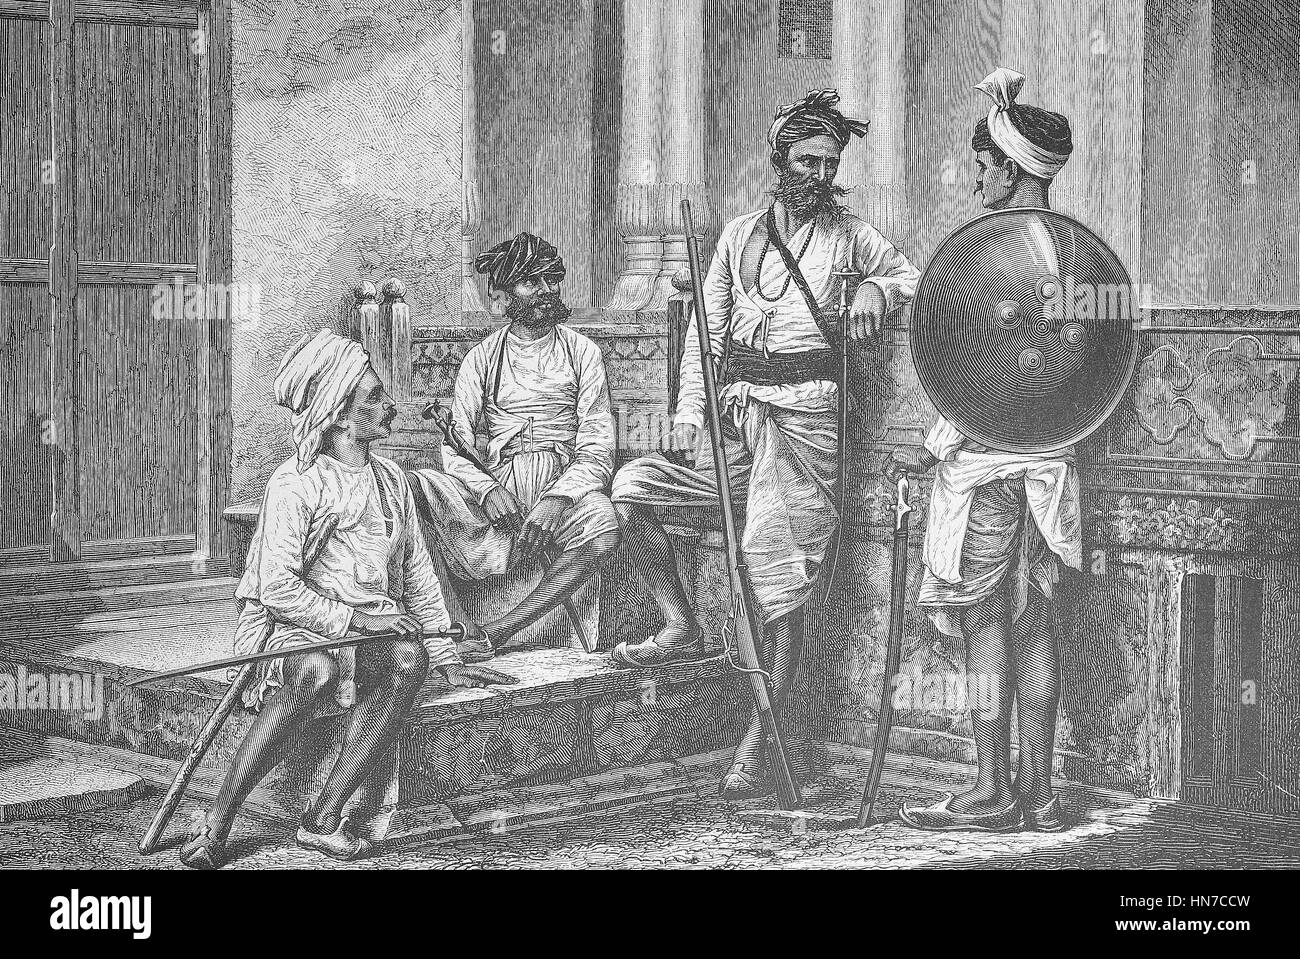 Les guerriers de la Rajput, membre de l'clans patrilinéaires du sous-continent indien, l'Inde. Krieger von der Kaste der dans Radschputen Ostindien, Indien, gravure sur bois à partir de 1885, l'amélioration numérique Banque D'Images